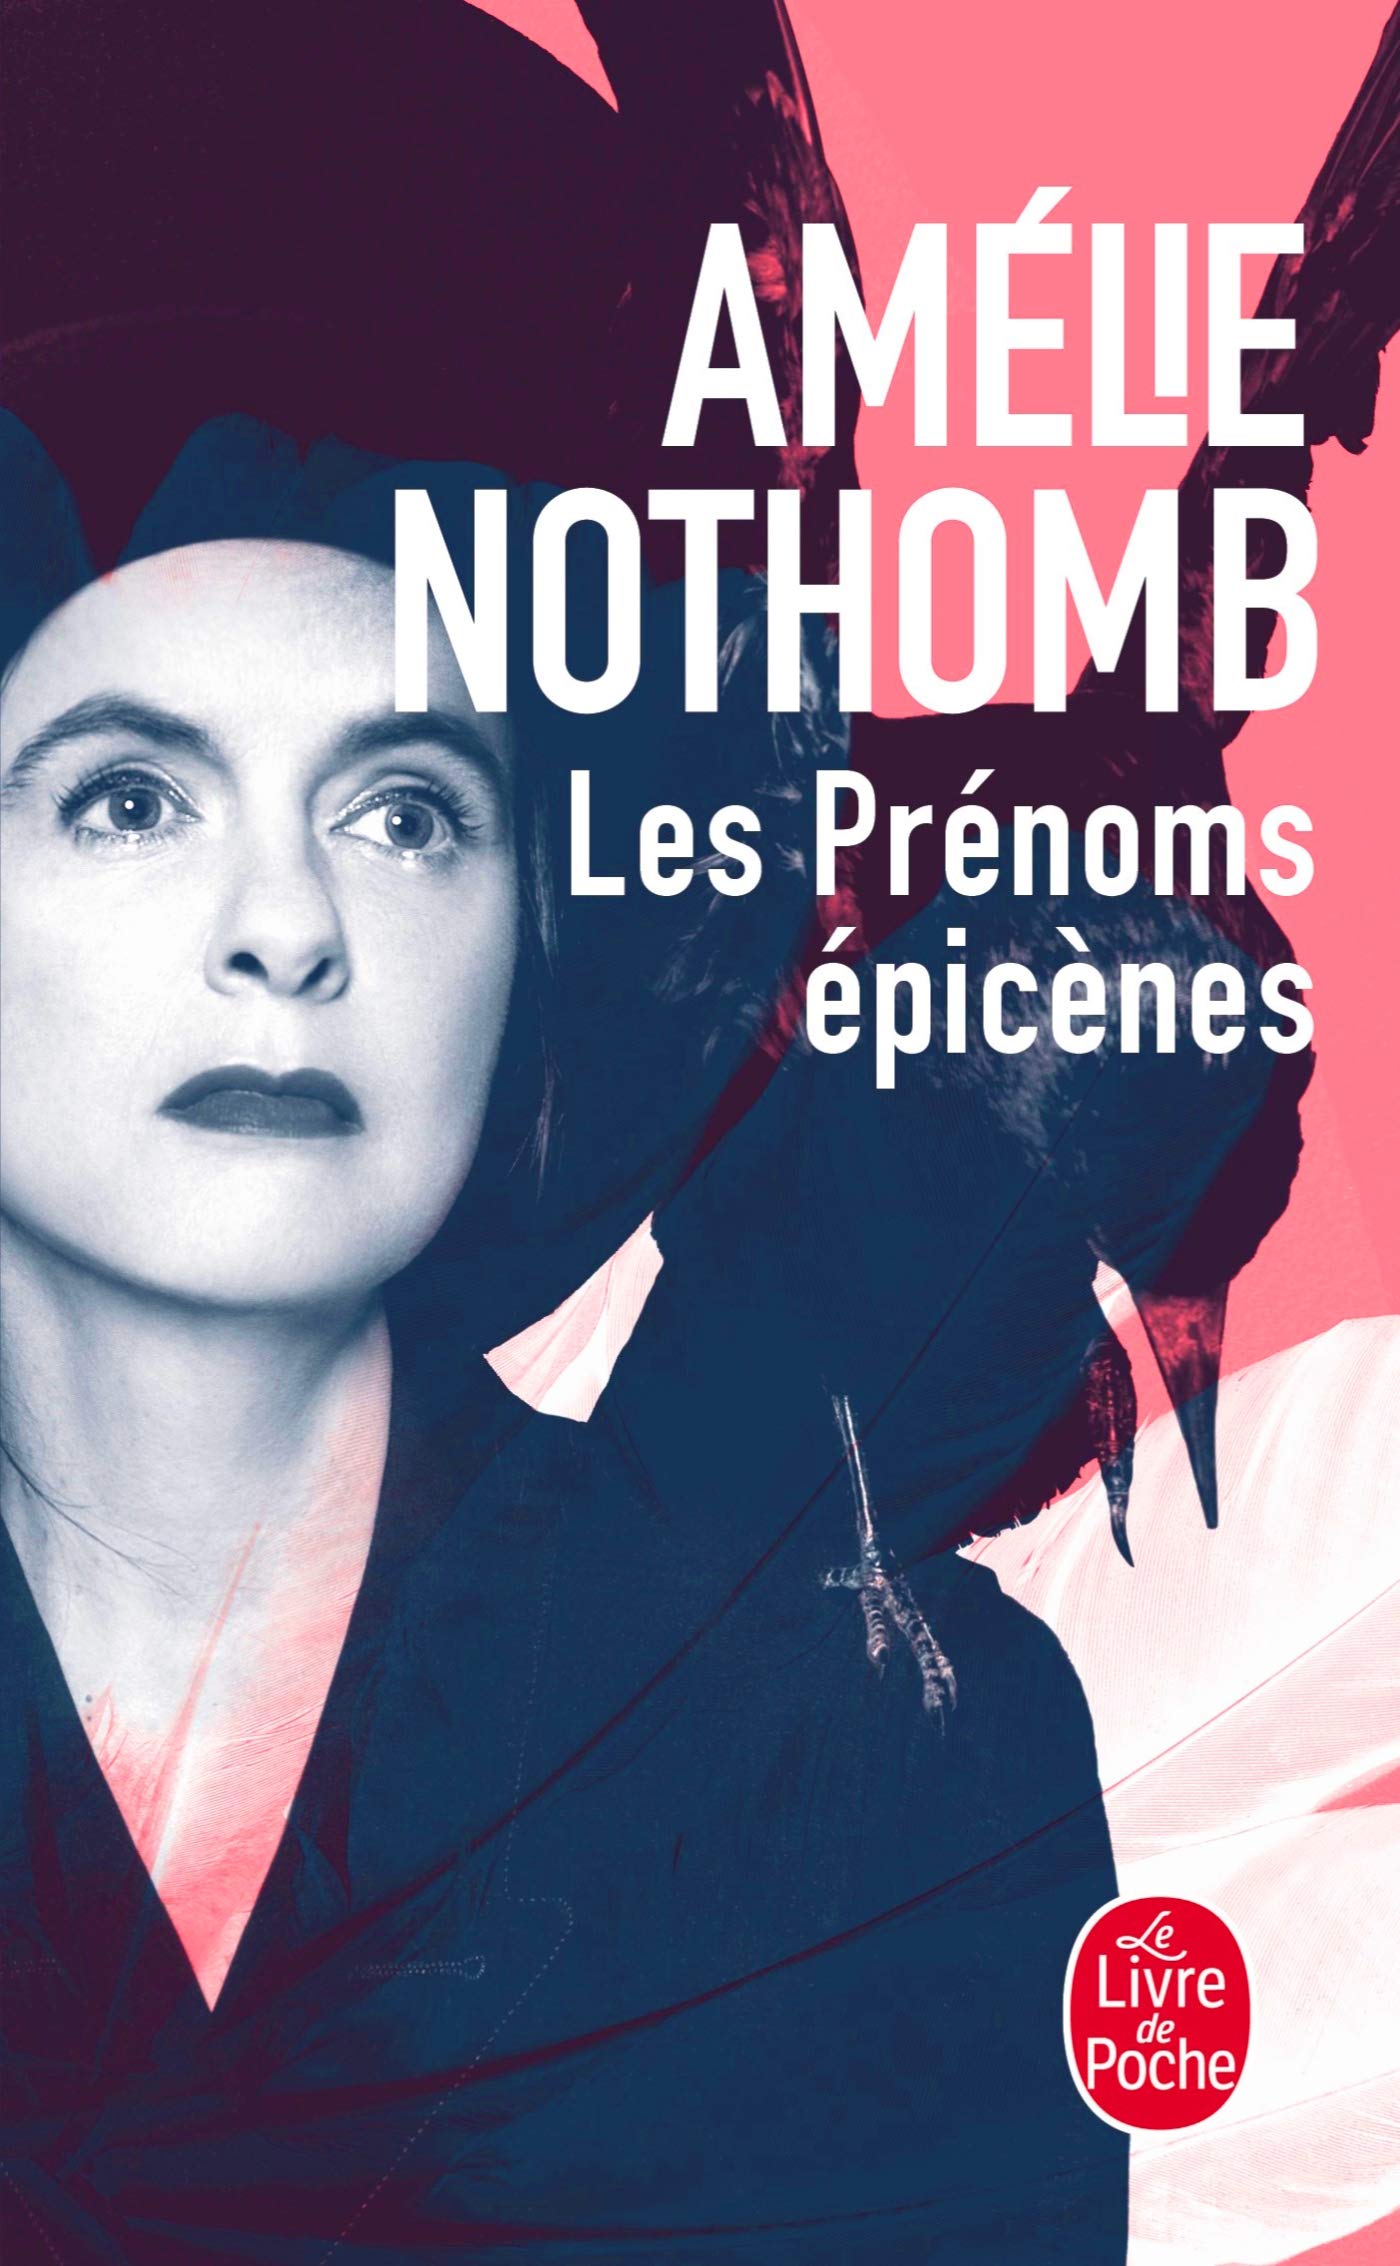 Amélie NOTHOMB - Les prenoms épicenes